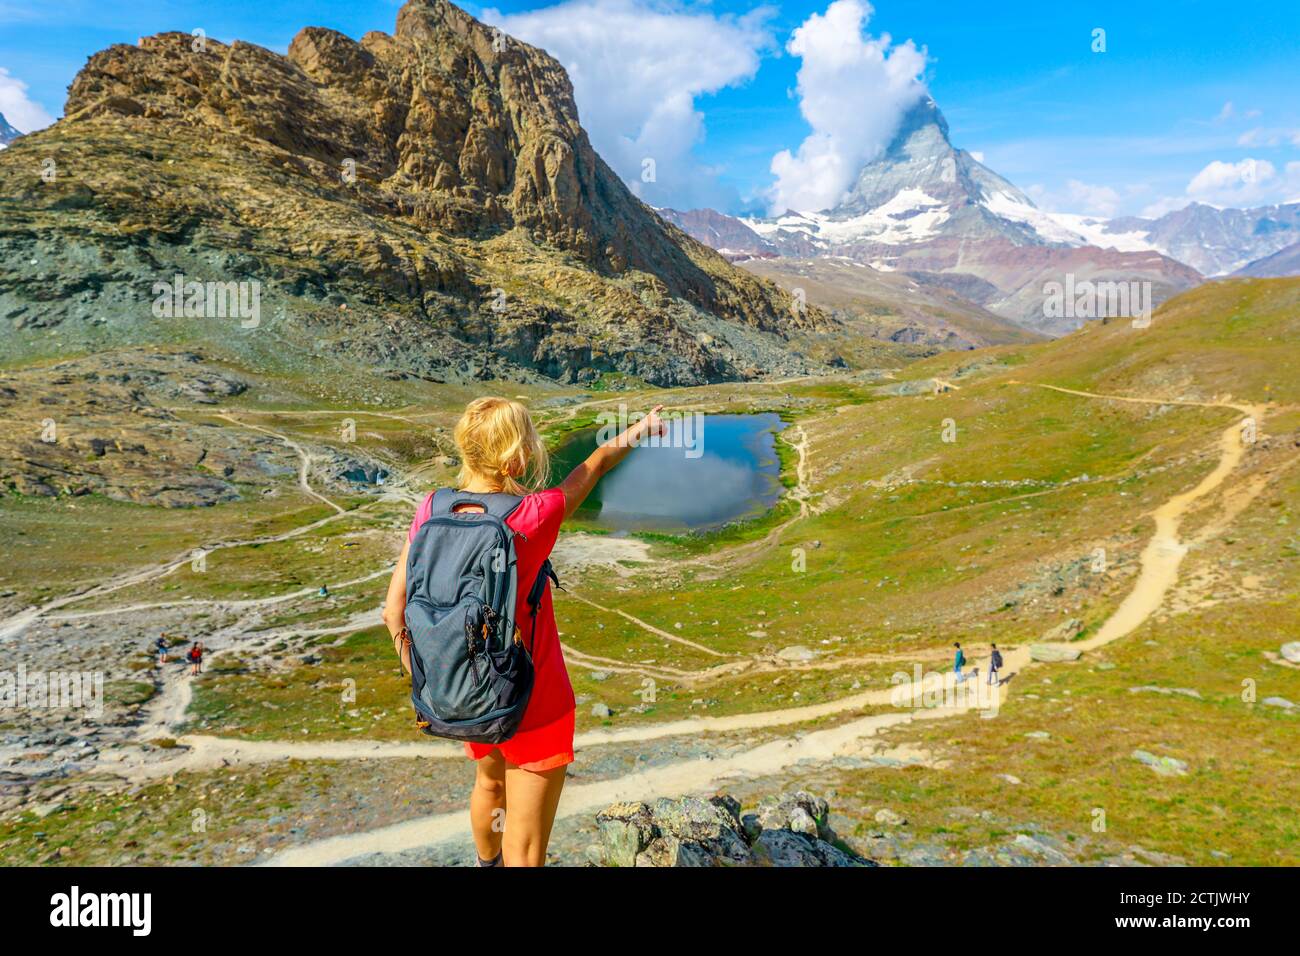 Wanderfrau Backpacker mit Blick auf das Matterhorn oder den Monte Cervino oder Mont Cervin, die Schweizer Alpen und den Riffelsee. Aktivitäten im Freien in Zermatt Stockfoto